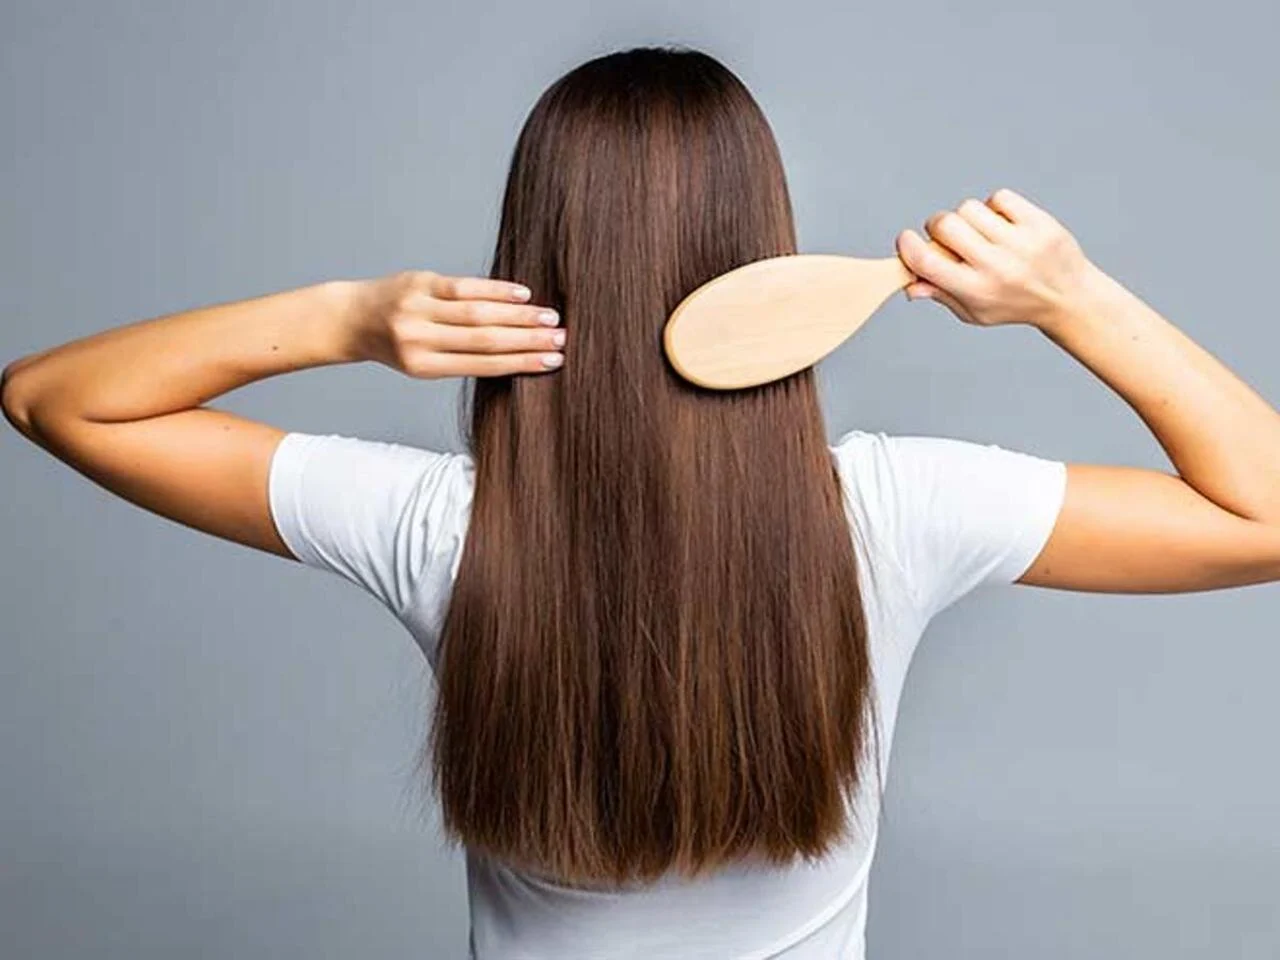 “سر الشعر الناعم في 60 دقيقة!” أقوى وصفة لتكثيف الشعر وتنعيمه ومنع تساقطه!